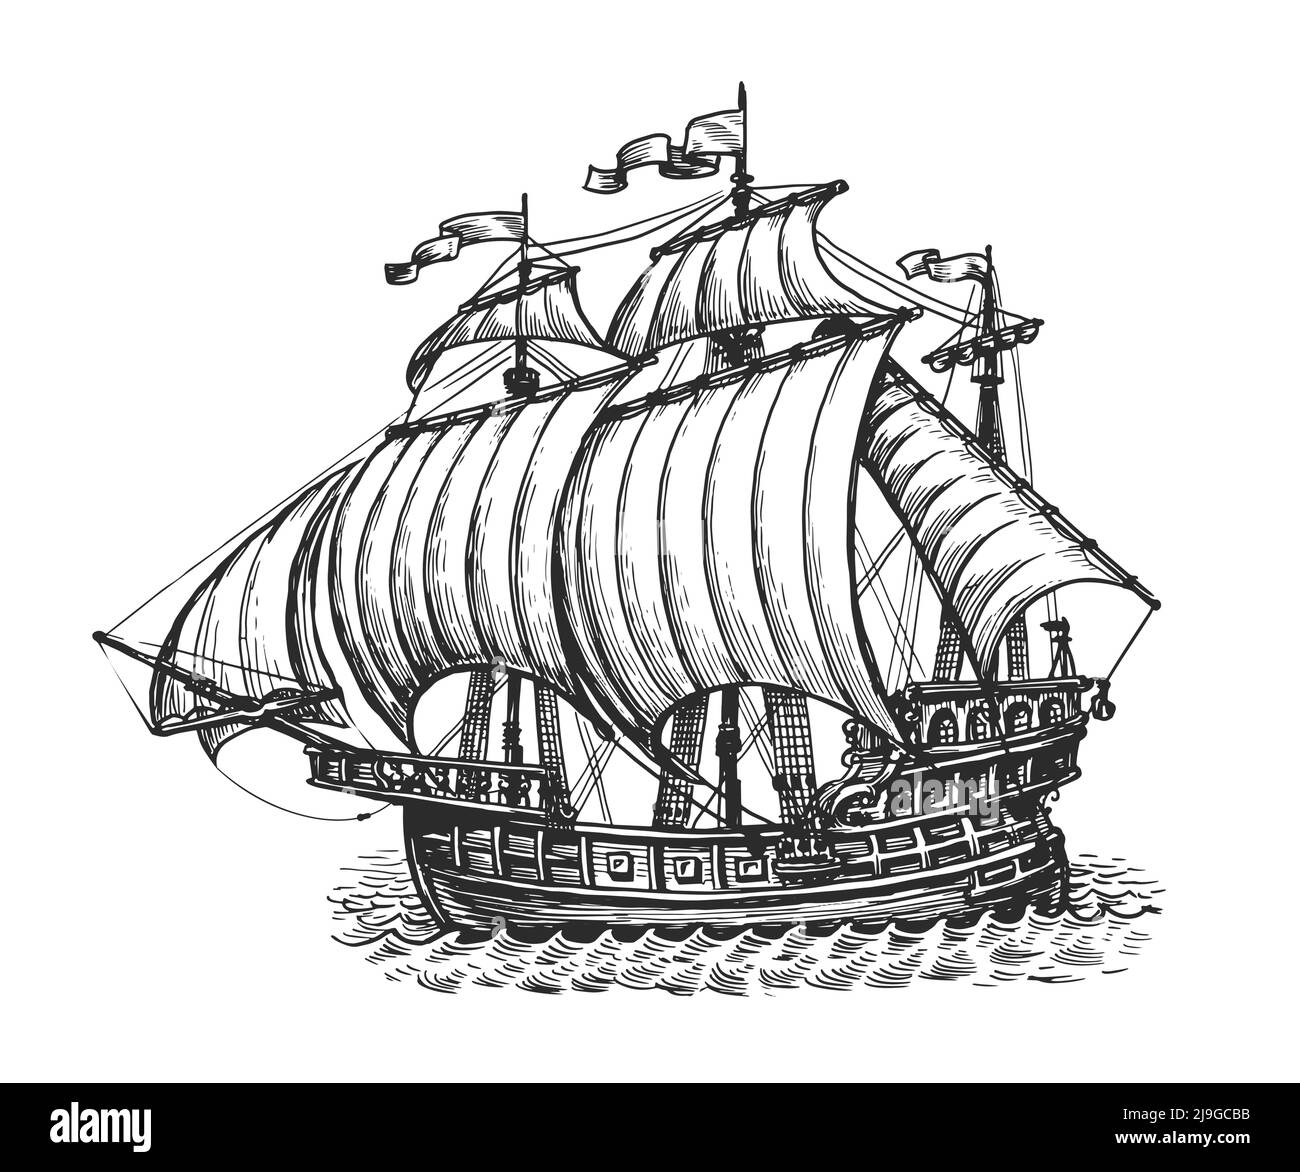 Croquis de l'ancien navire à voile. Concept nautique. Illustration vectorielle dessinée à la main avec un style de gravure vintage Illustration de Vecteur